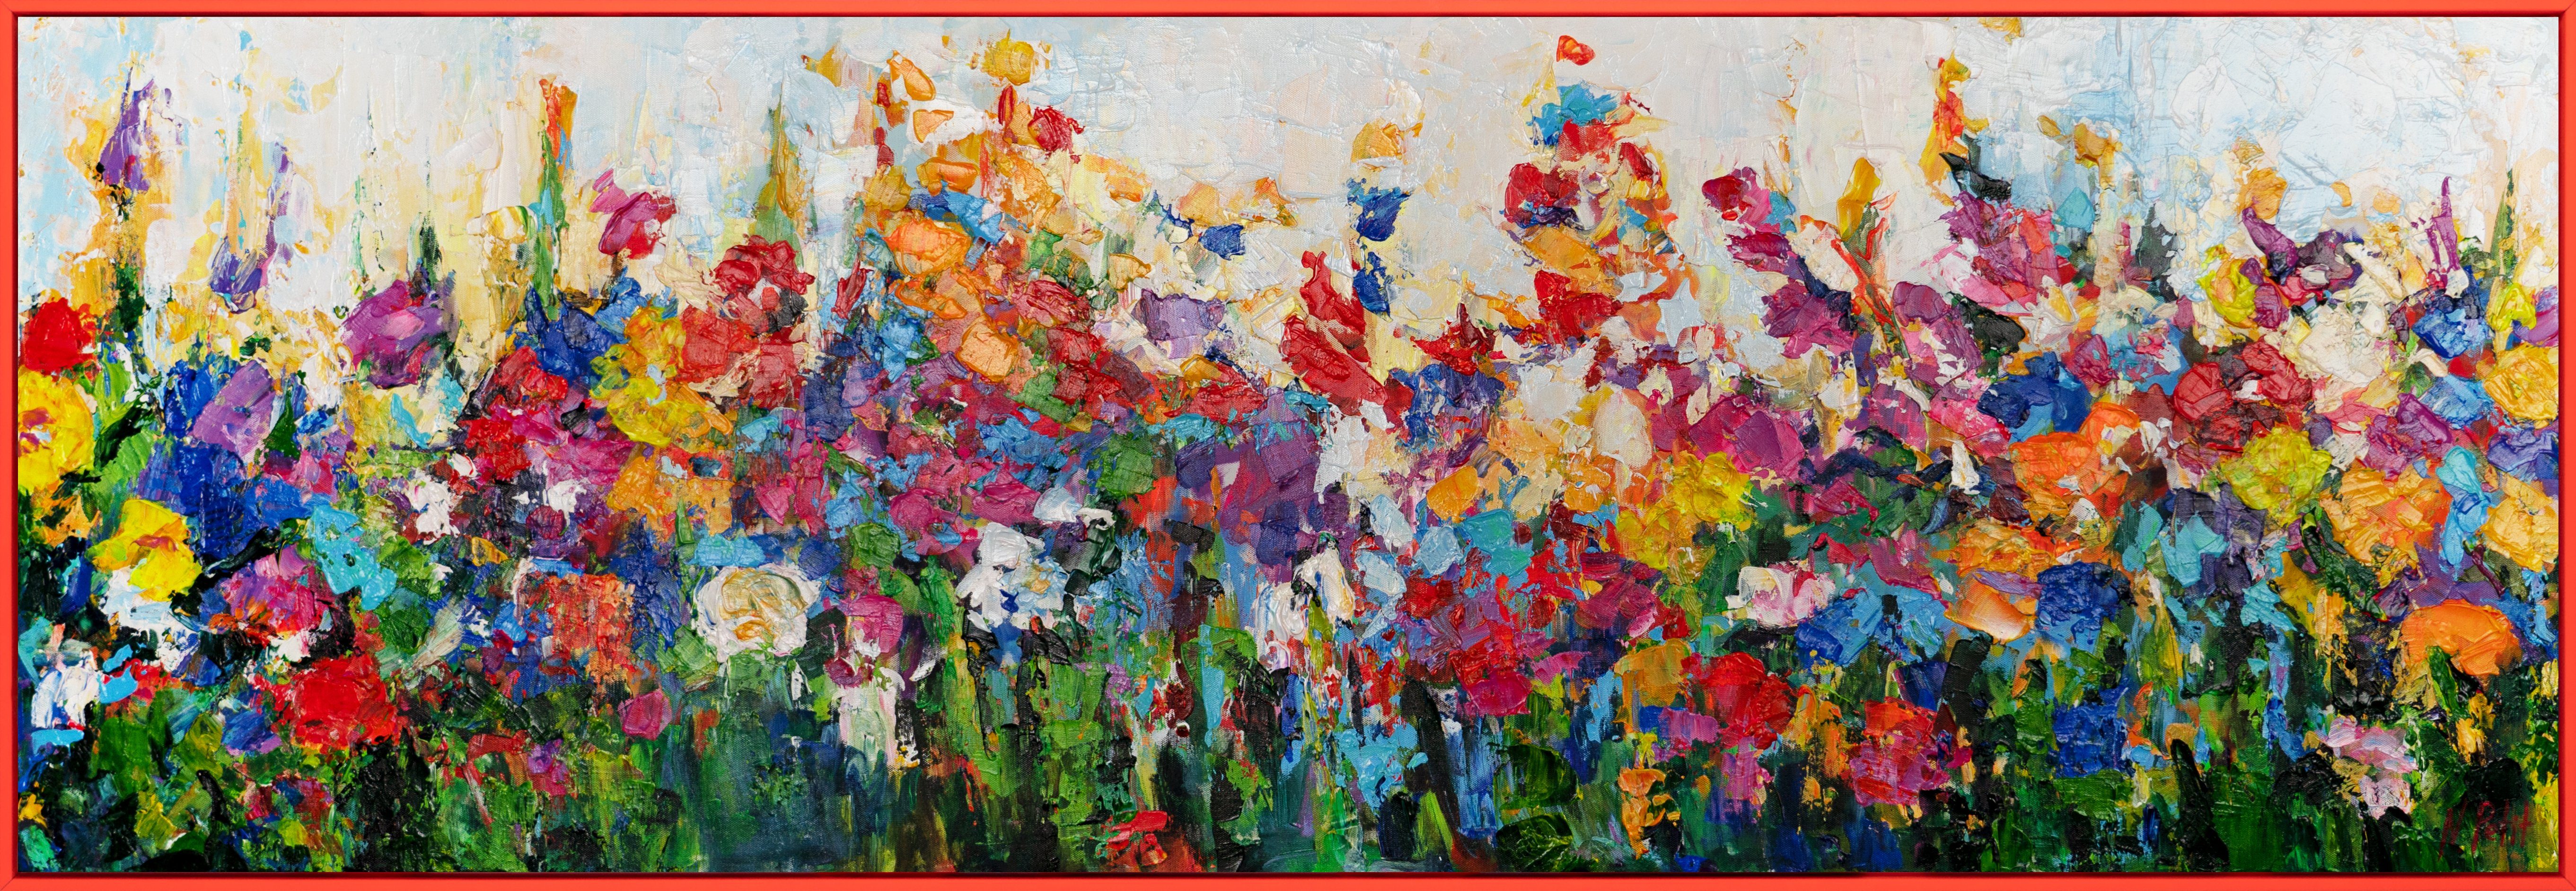 YS-Art Gemälde Wirbelwind der Feldfarben, Blumen Mit Rahmen in Rot